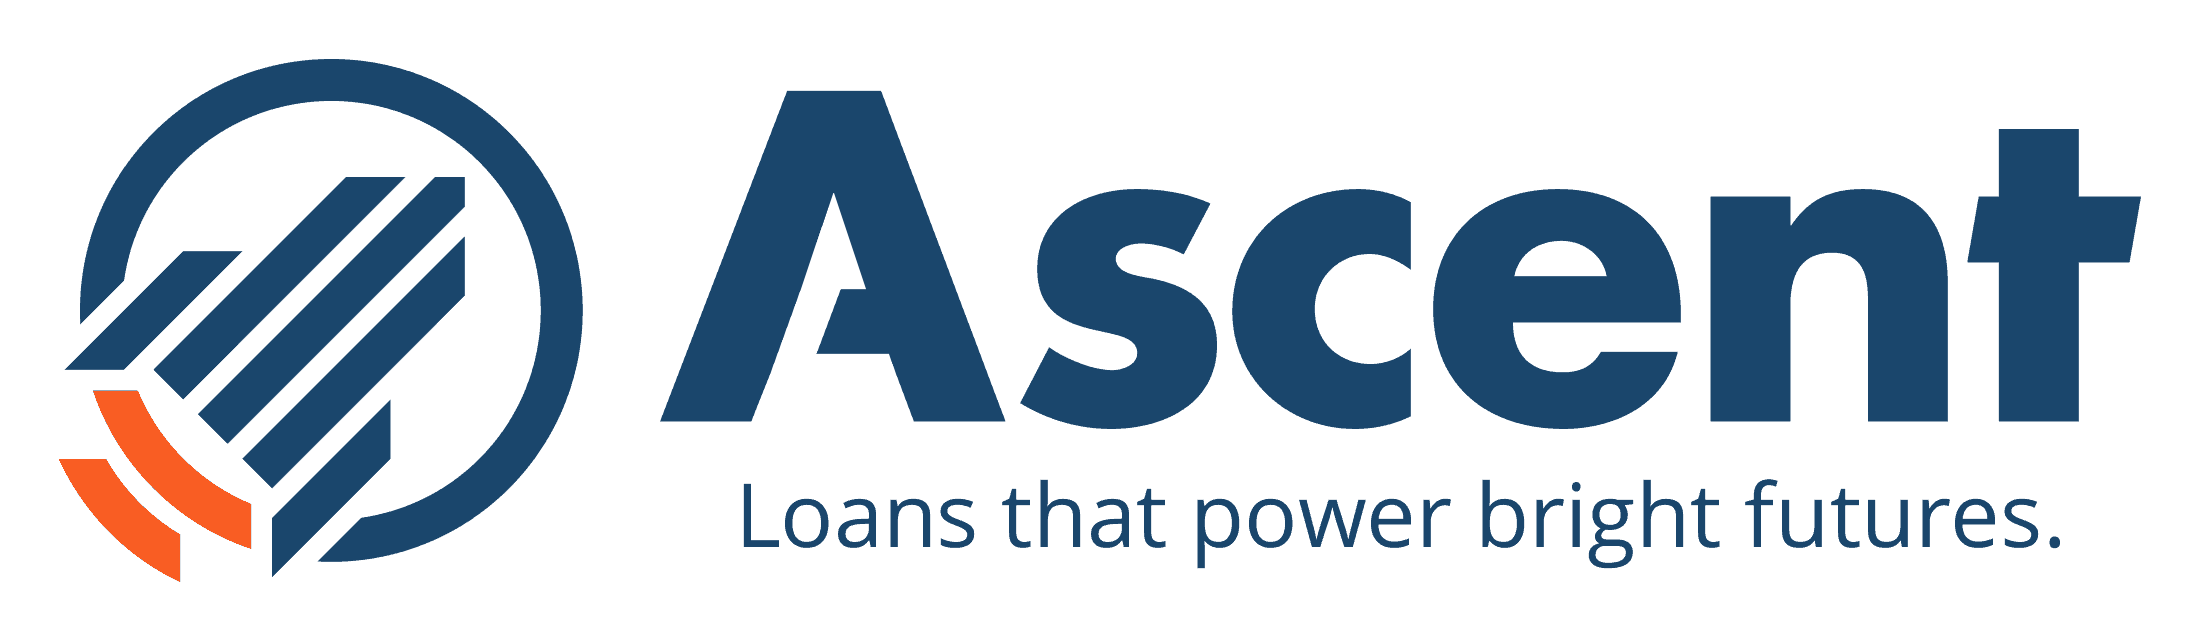 Earnest Comparison: Ascent Student Loans